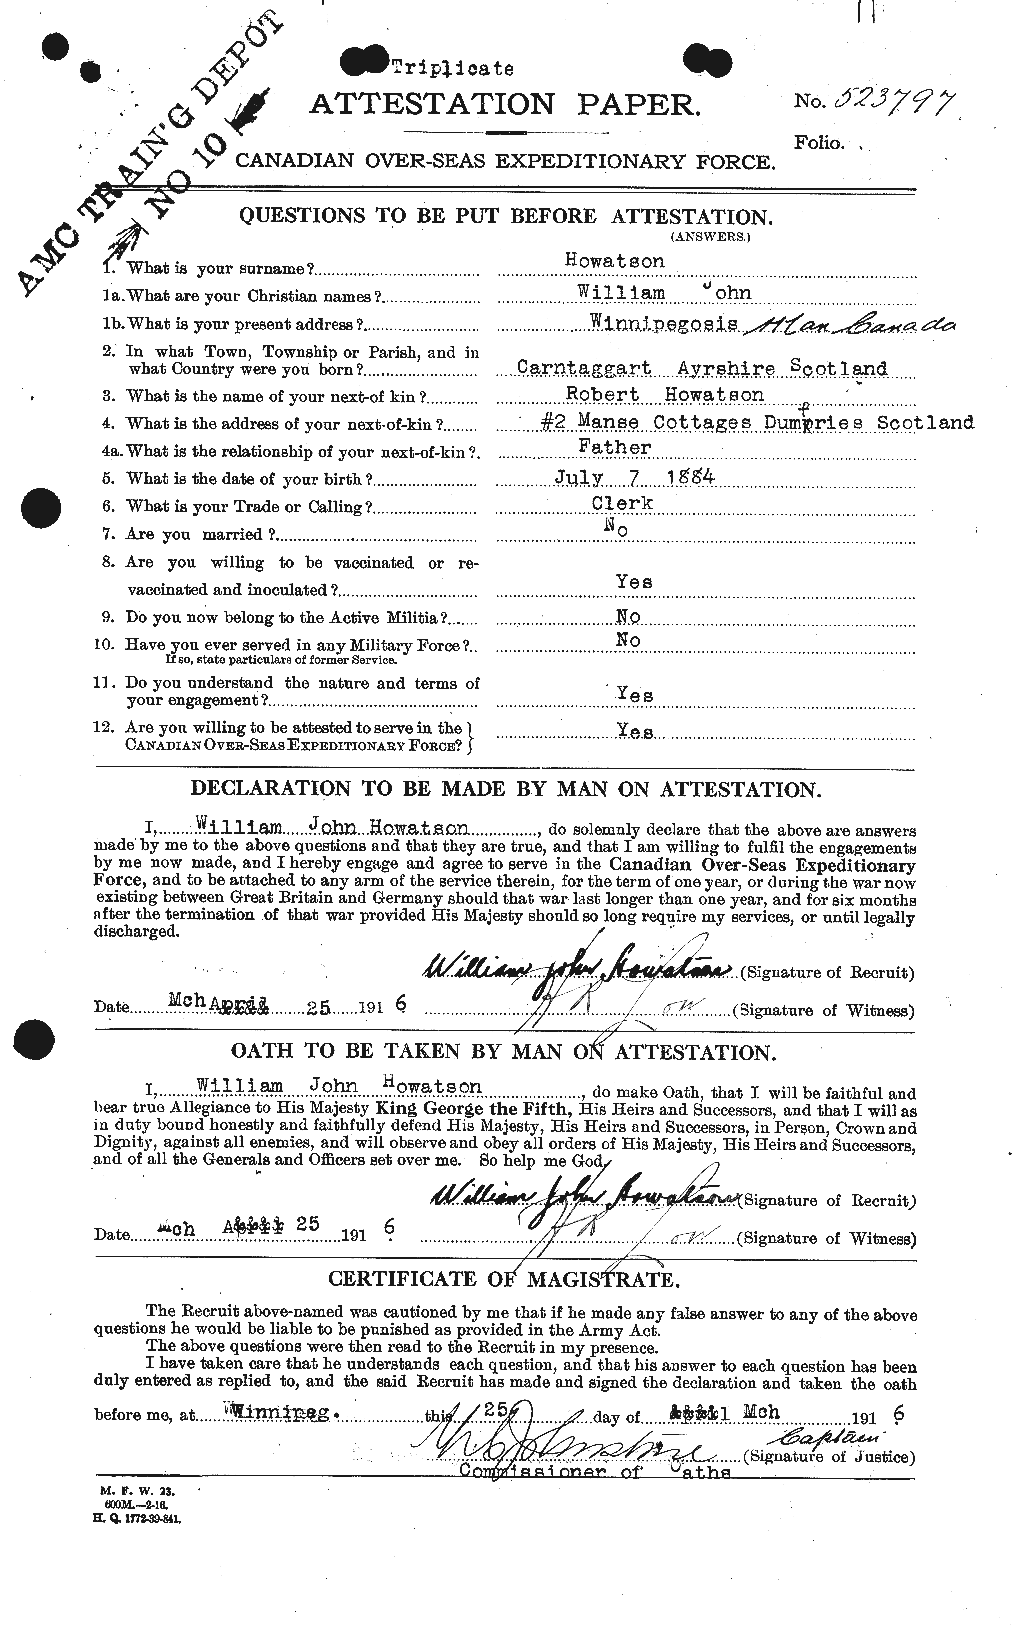 Dossiers du Personnel de la Première Guerre mondiale - CEC 405202a